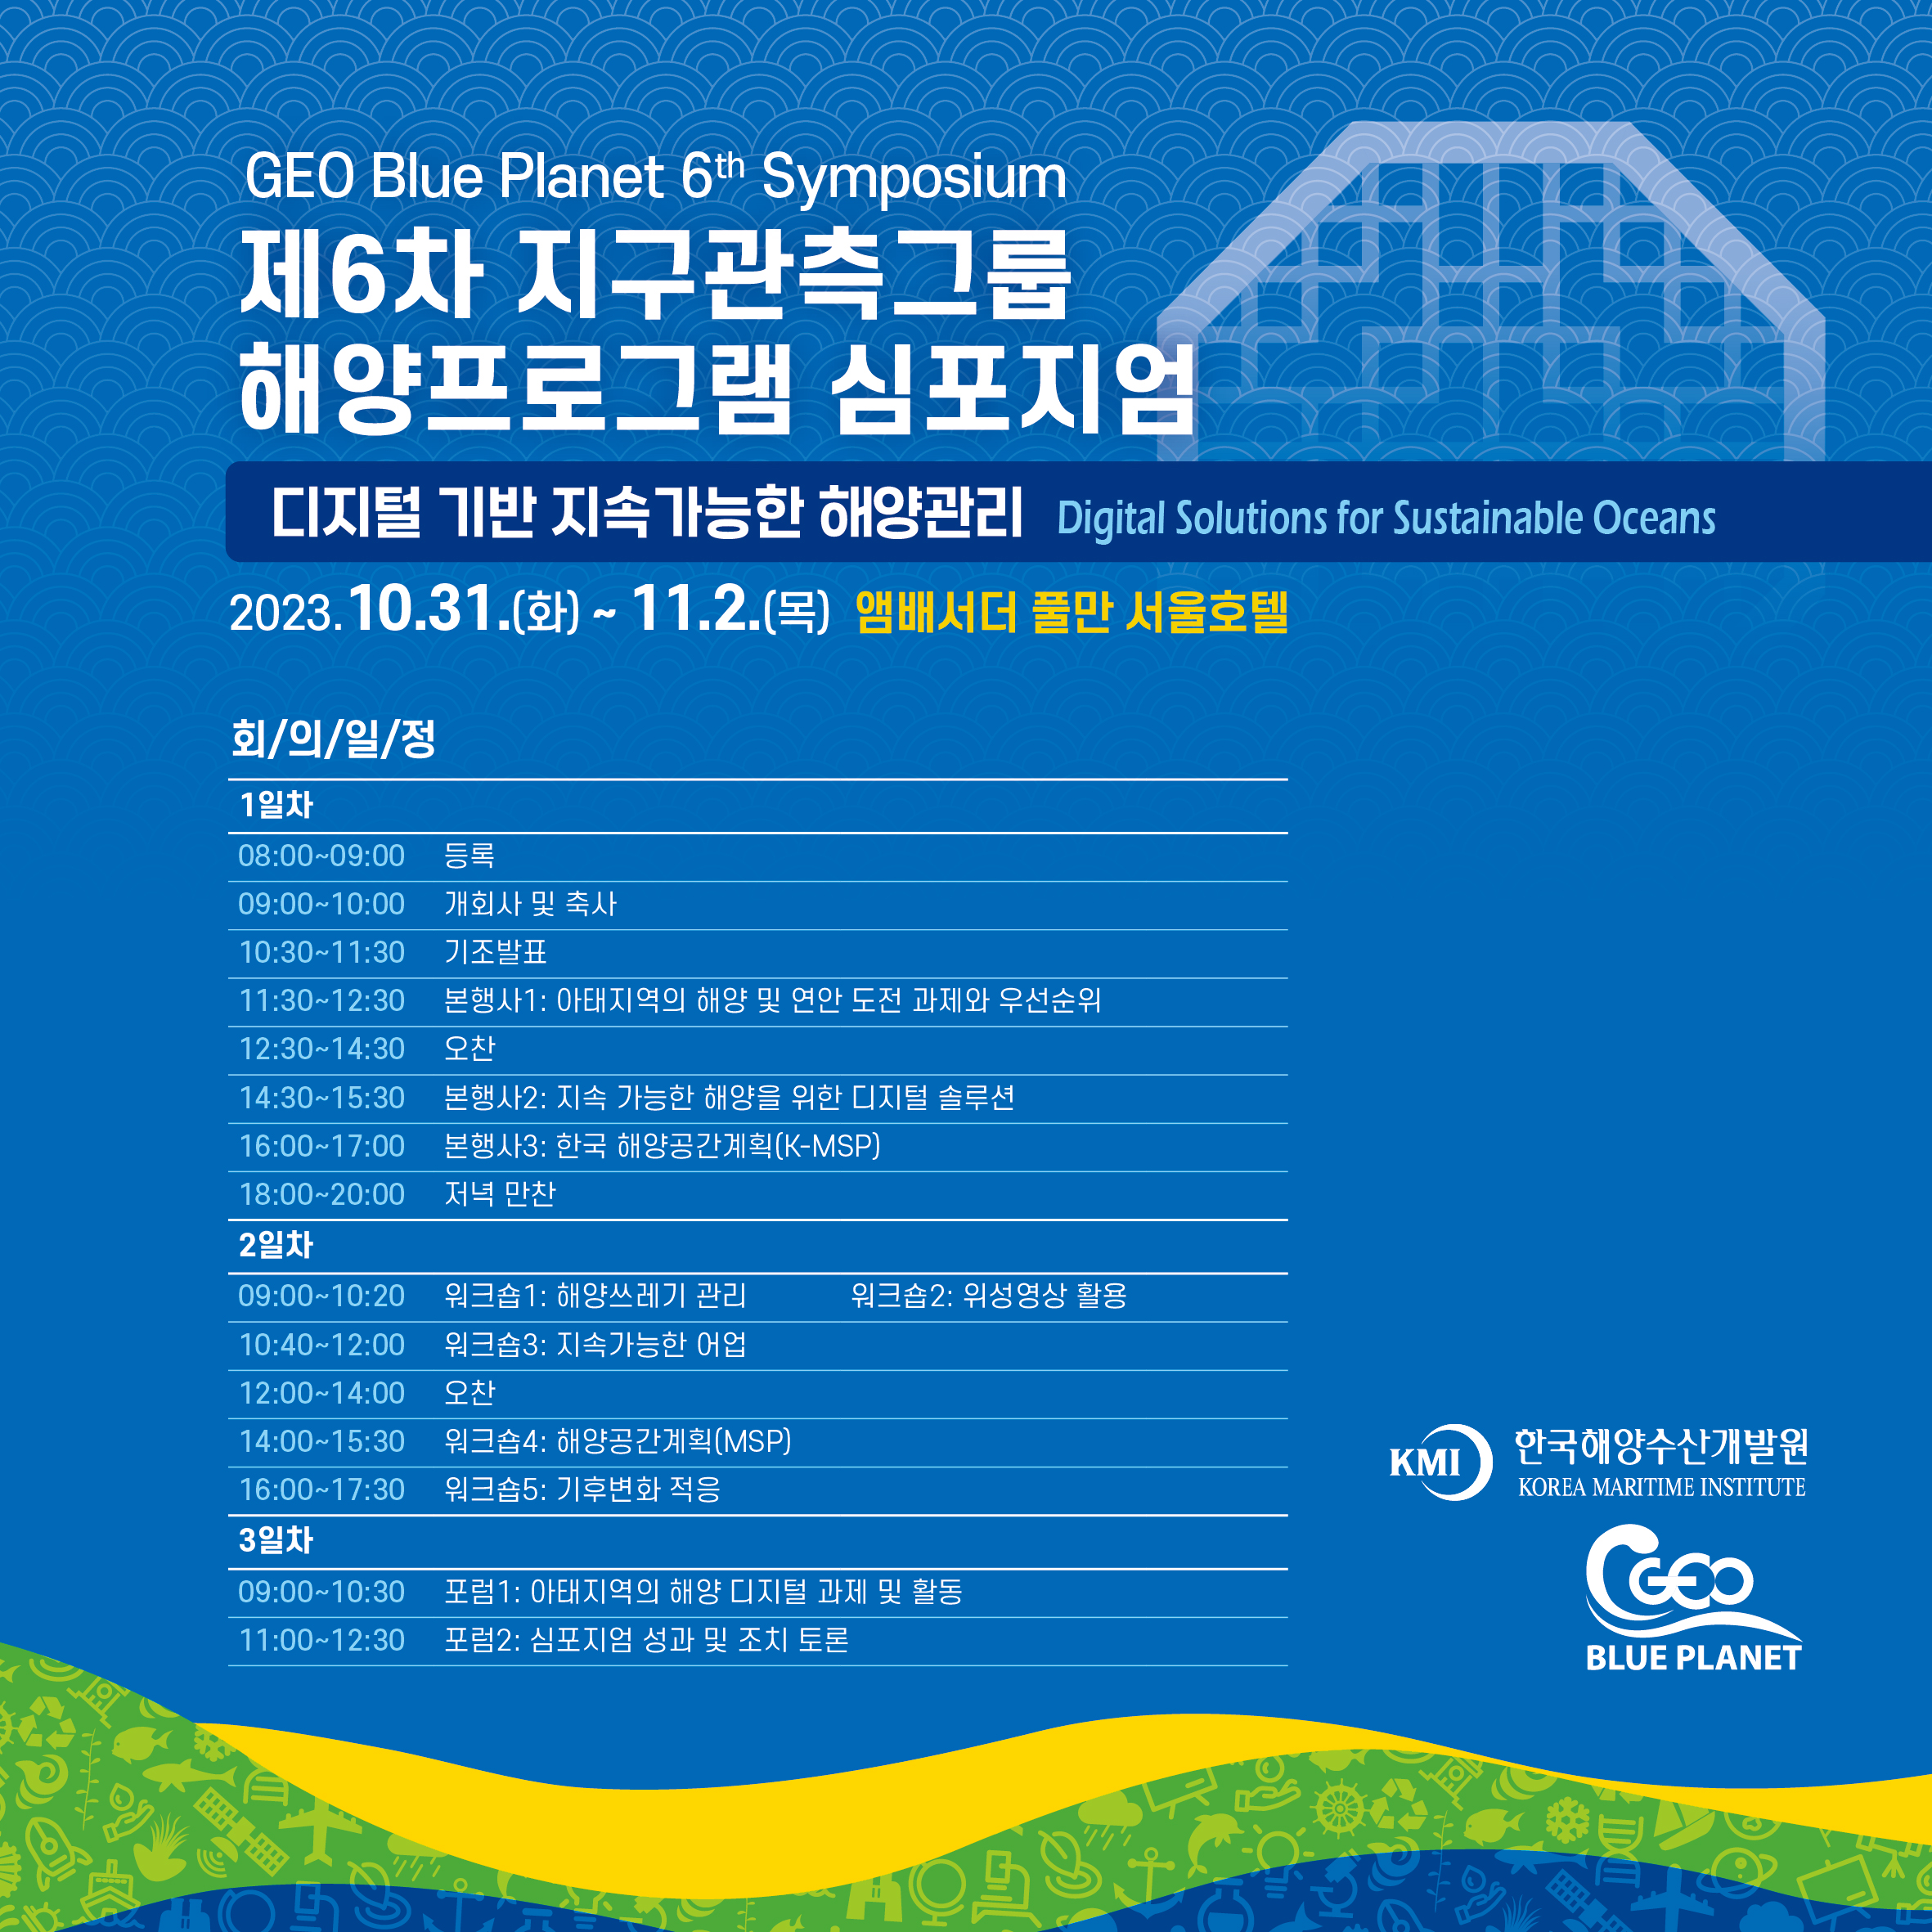 한국해양수산개발원은 오는 10월 31(화)부터 2박 3일 동안 앰배서더 풀만 서울에서 